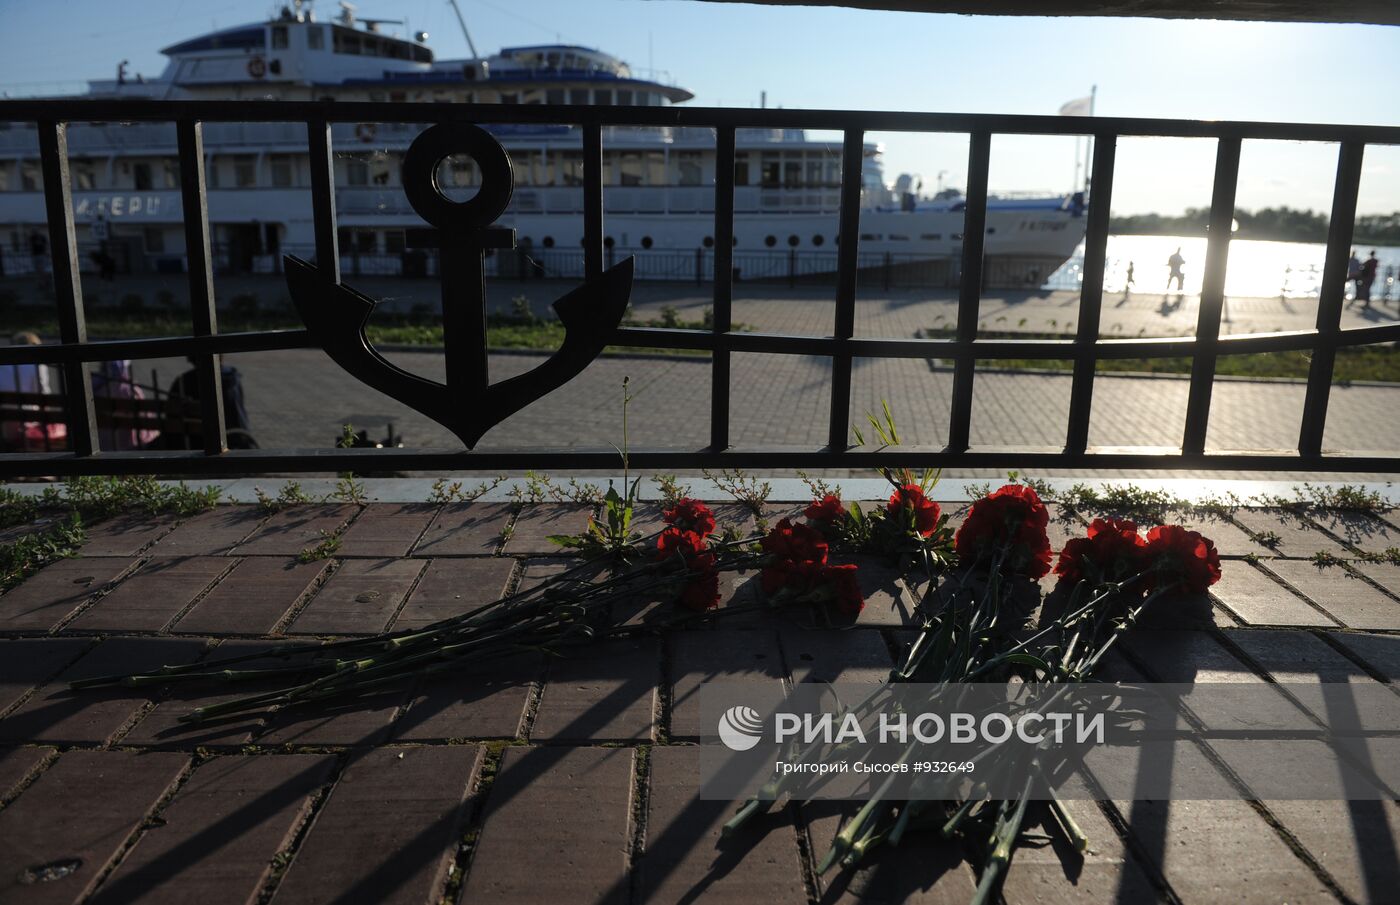 Цветы в порту Казани в память о погибших на теплоходе "Булгария"